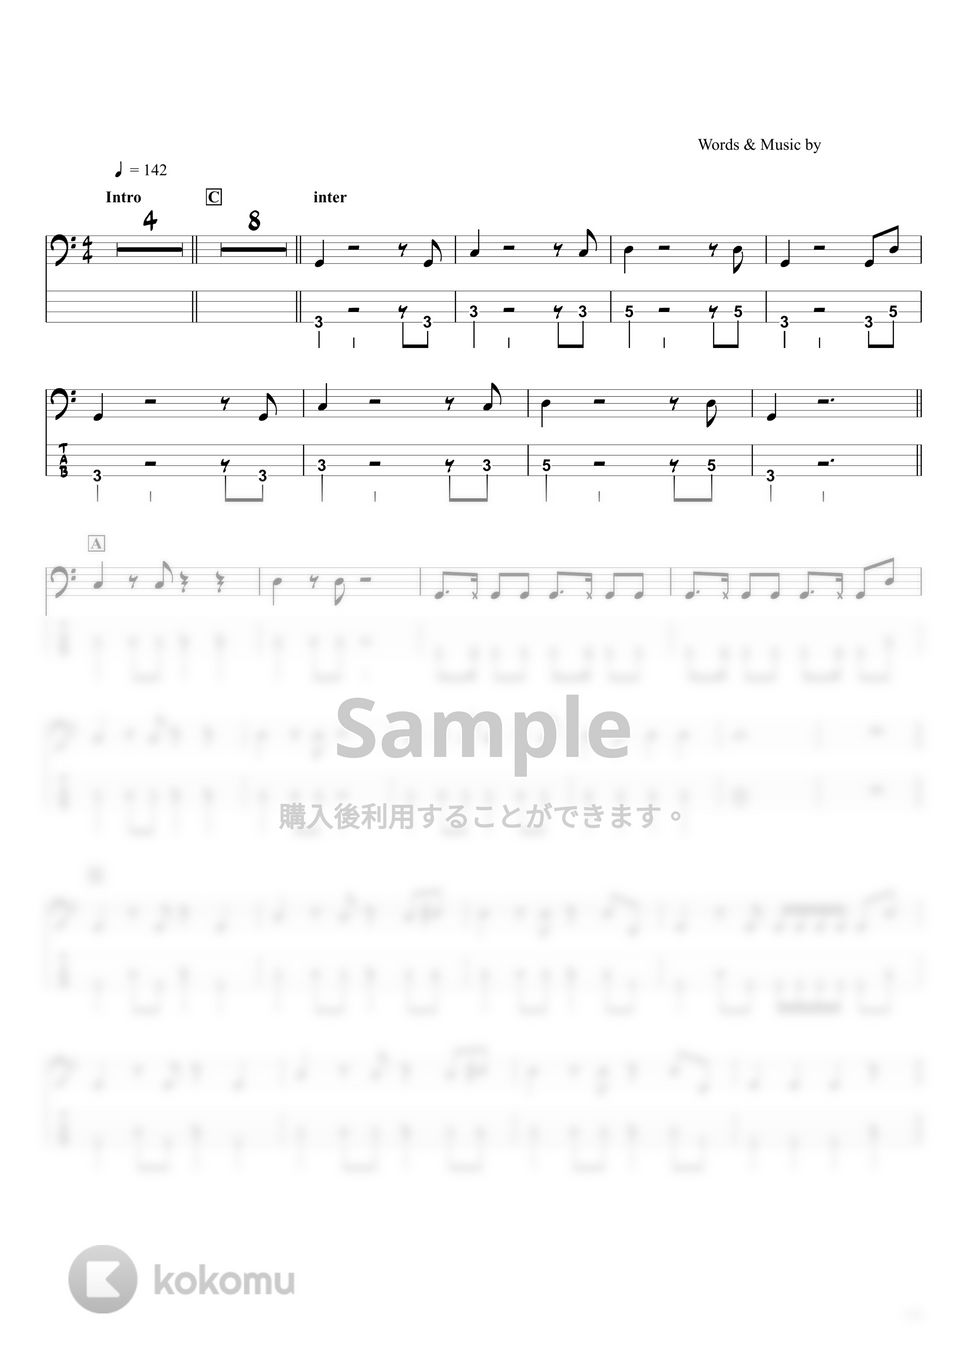 ピノキオピー - 神っぽいな (ベースTAB譜☆4弦ベース対応) by swbass